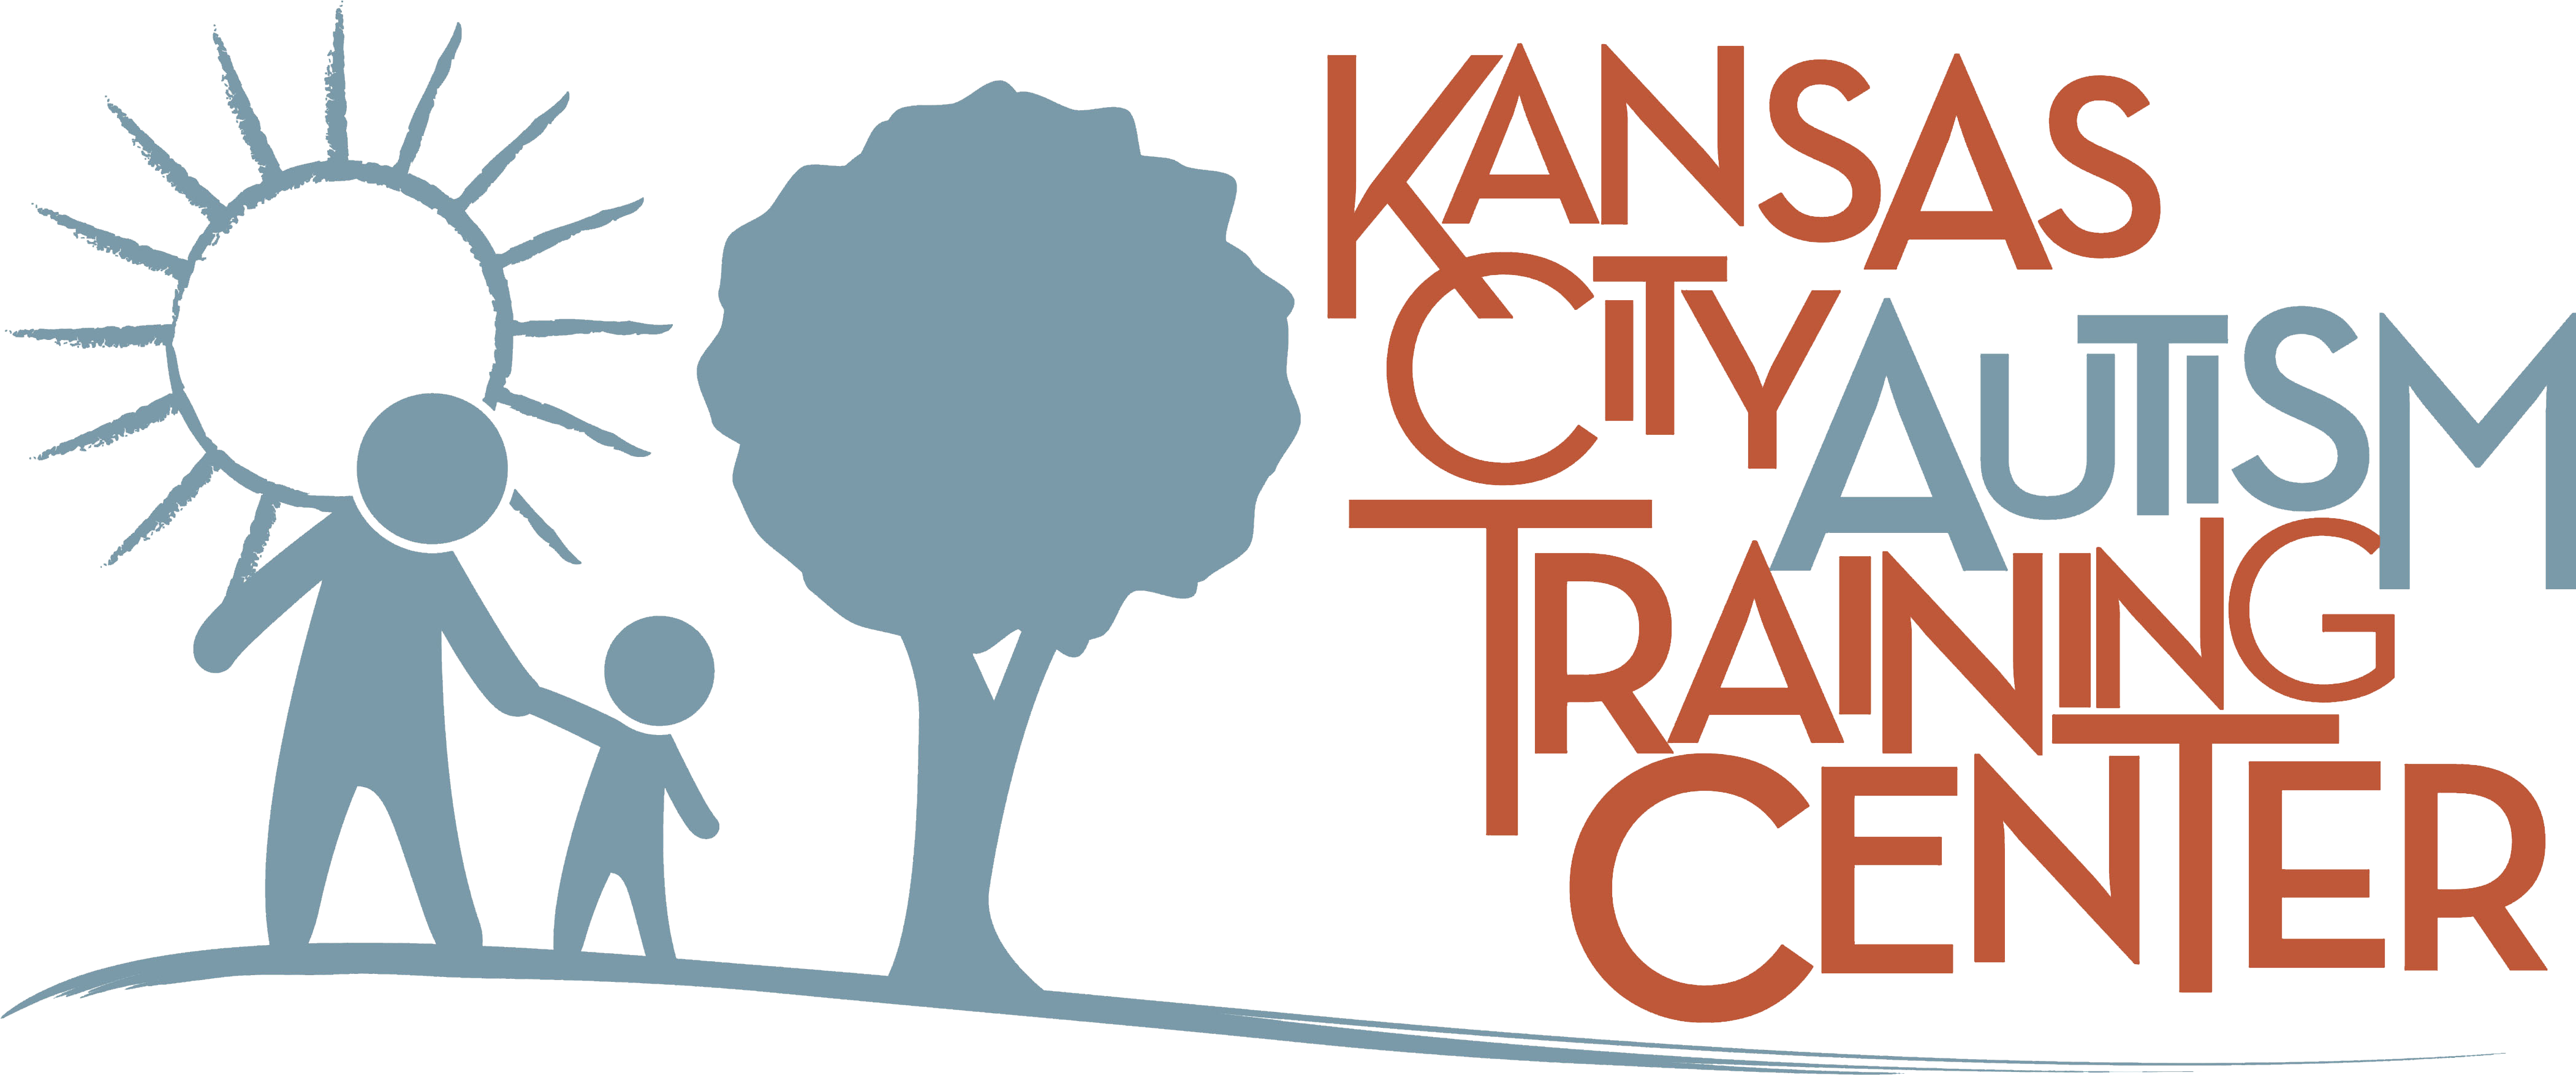 Kansas City Autism Training Center Clipart (4203x1792), Png Download